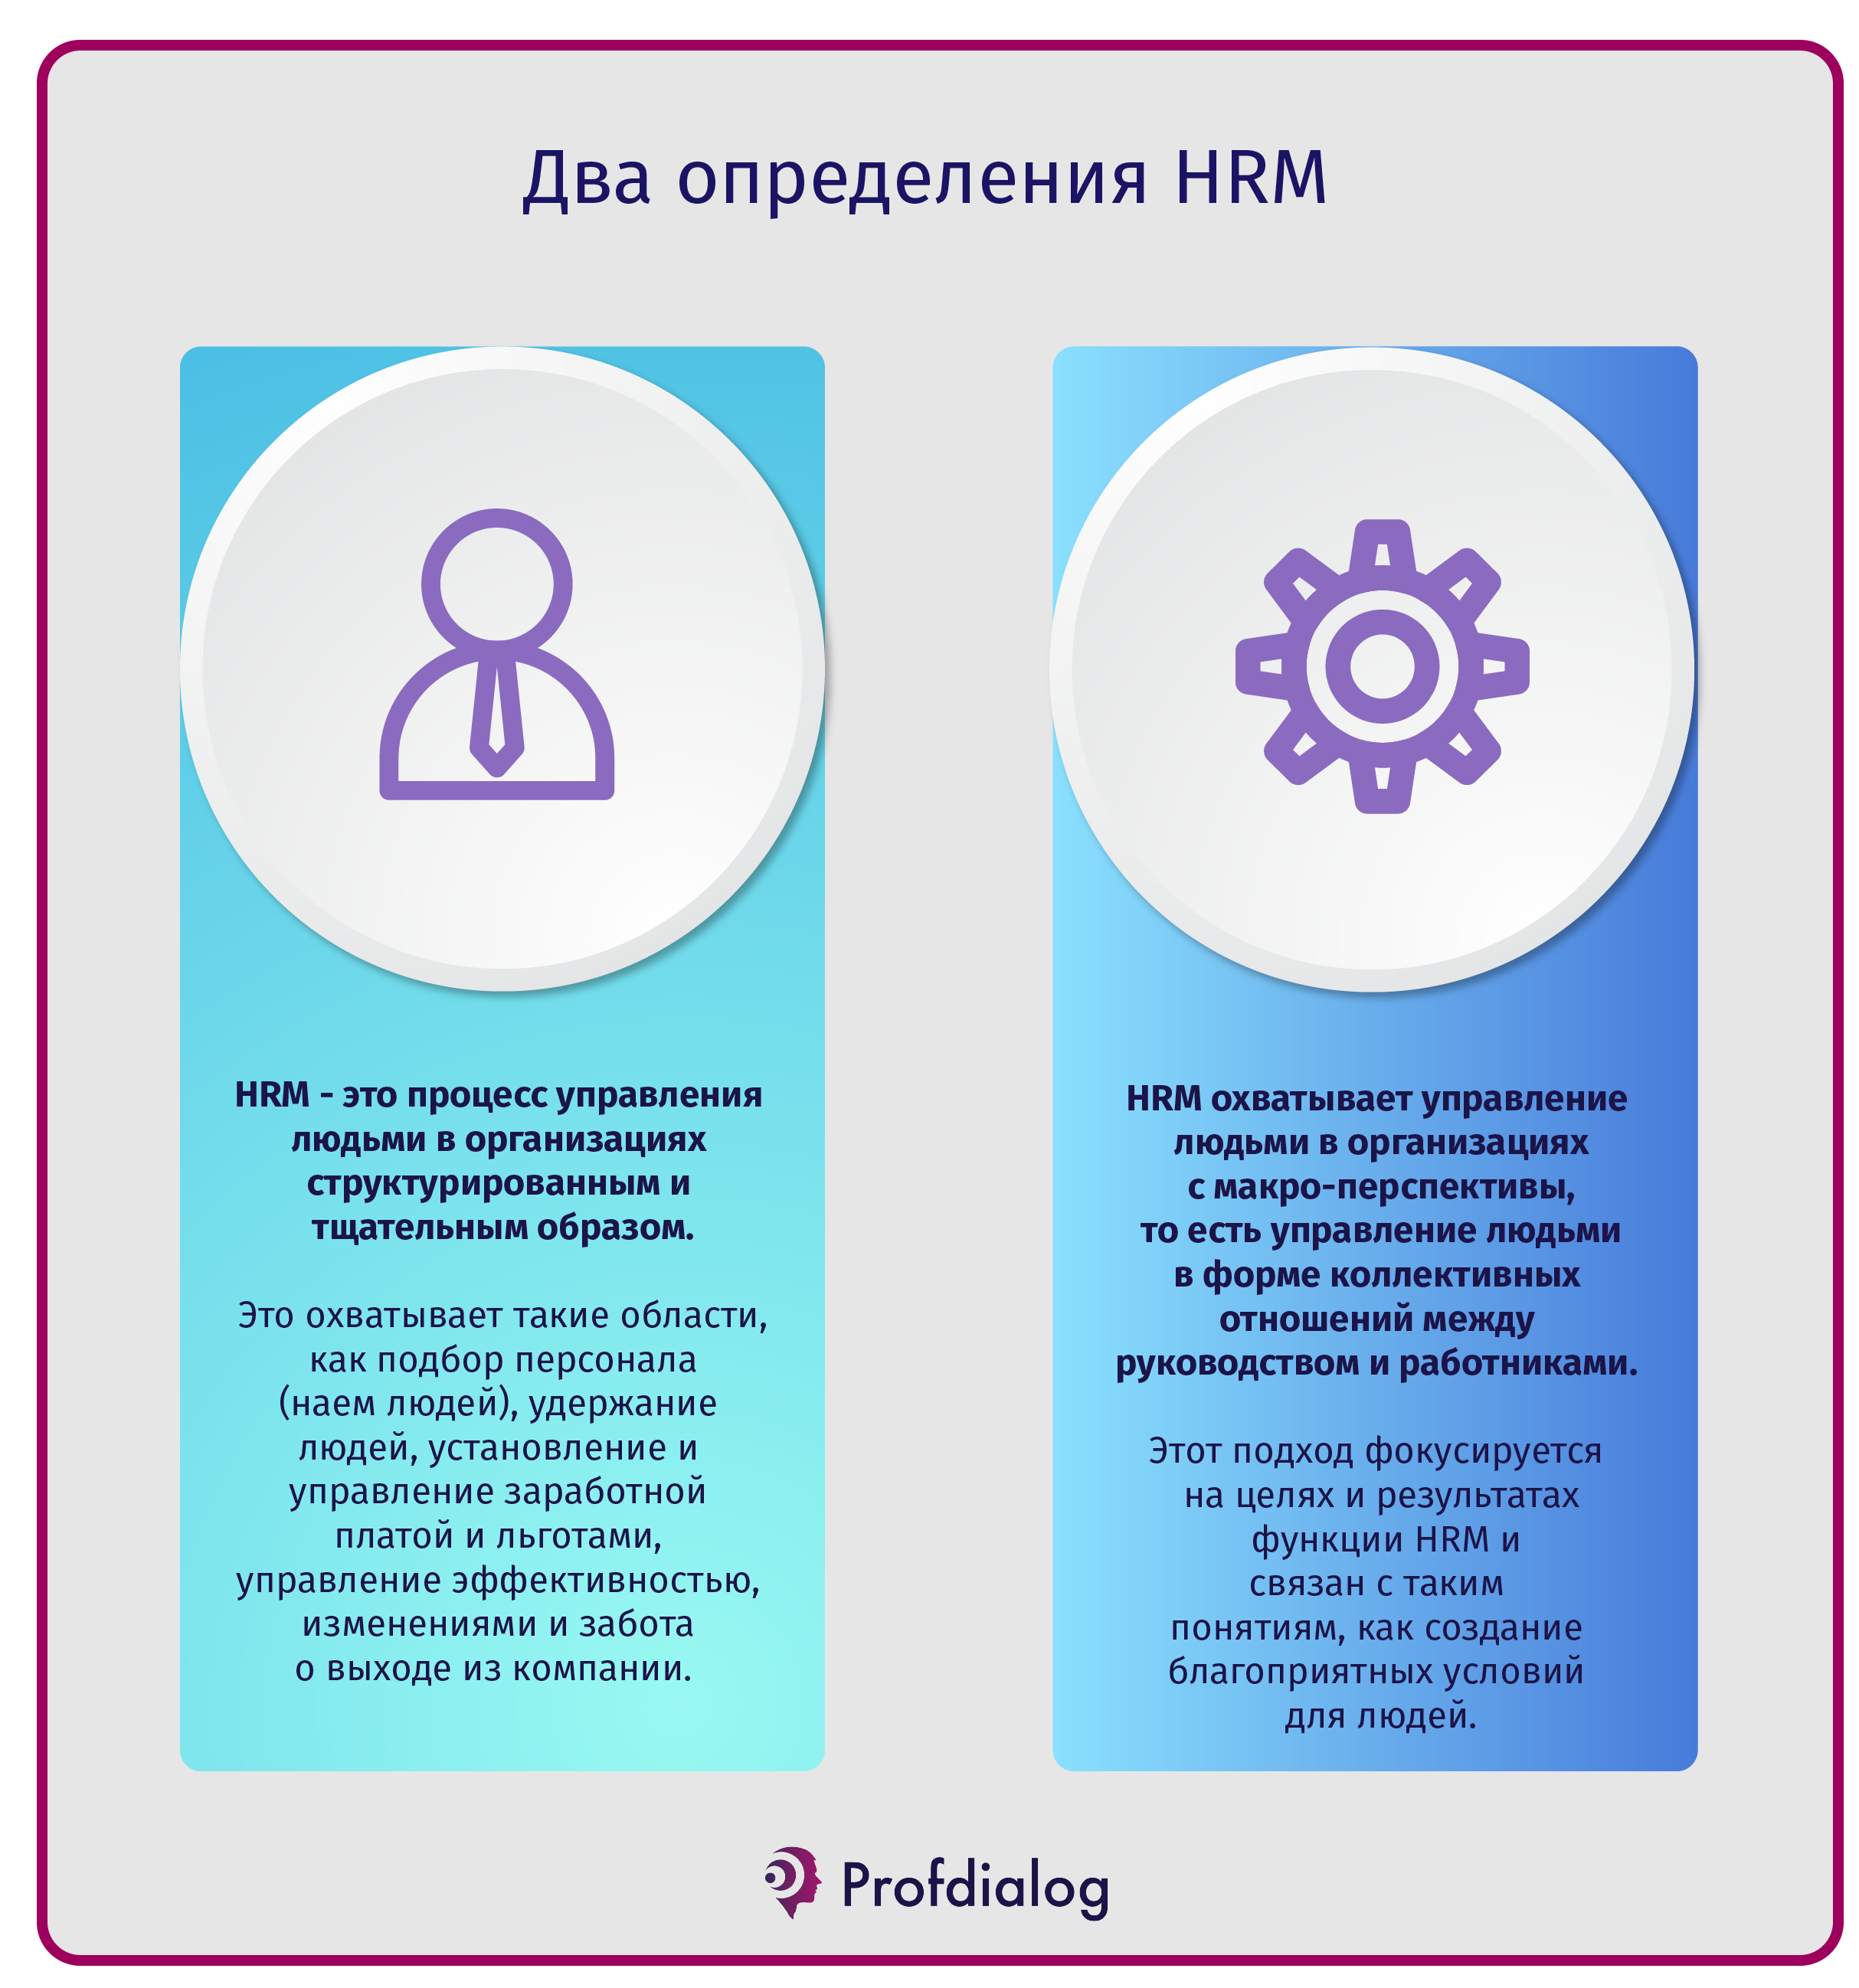 Два определения HRM